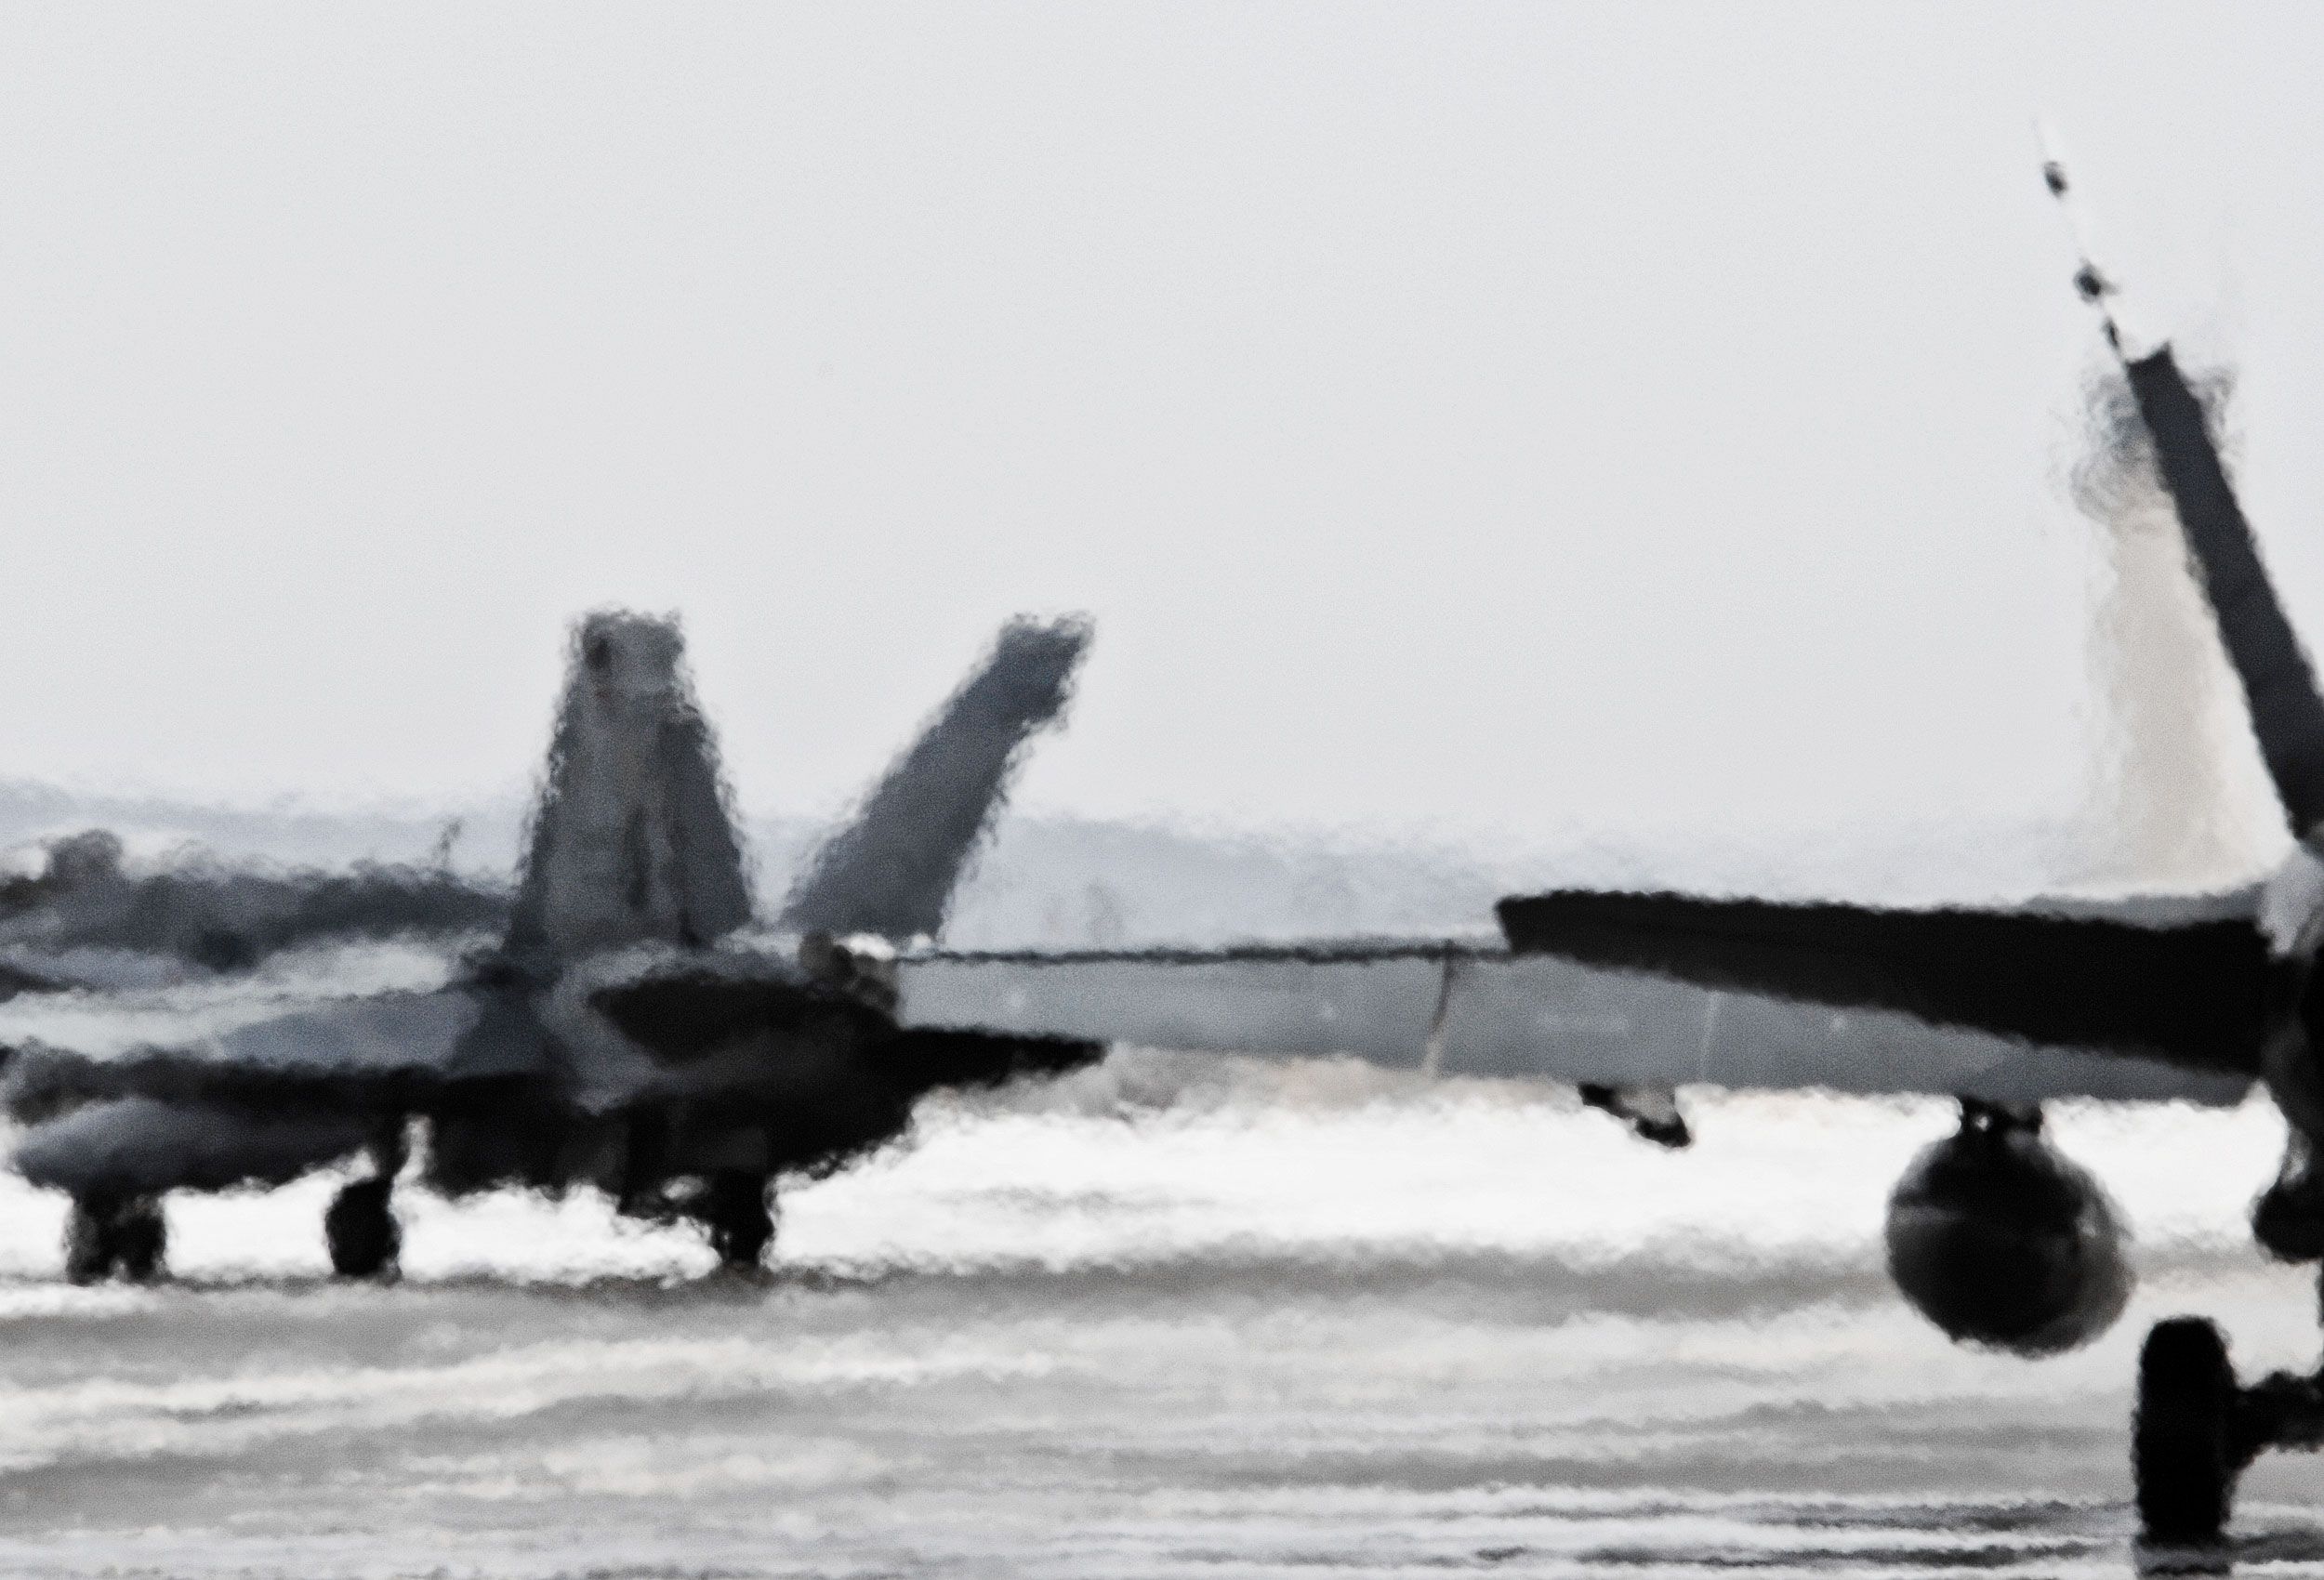 F-18s